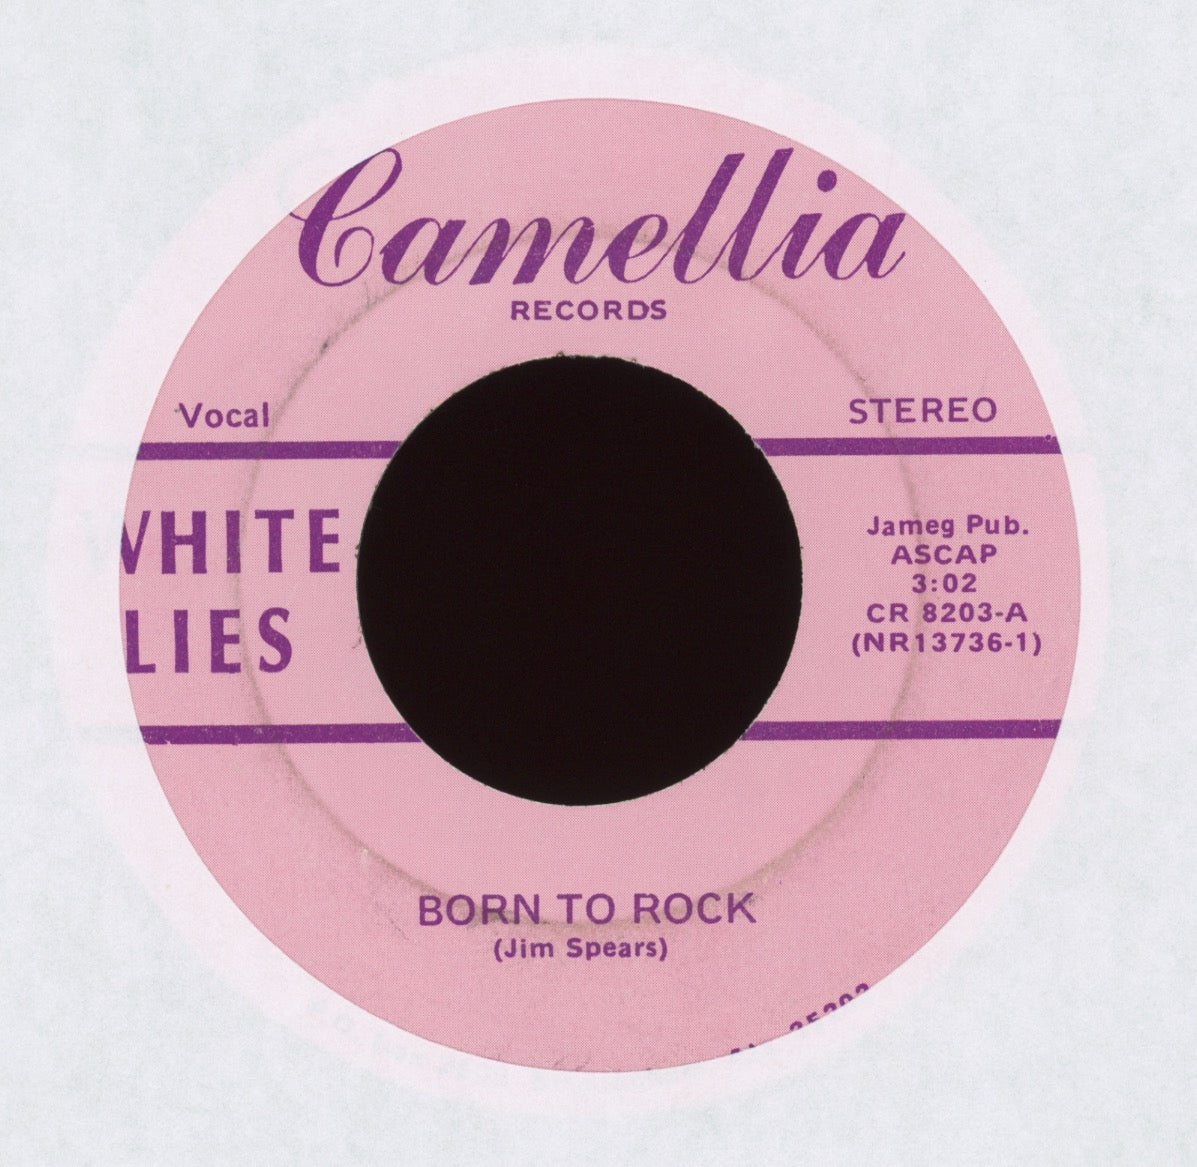 White Lies - White Lies on Camellia AOR Hard Rock 45